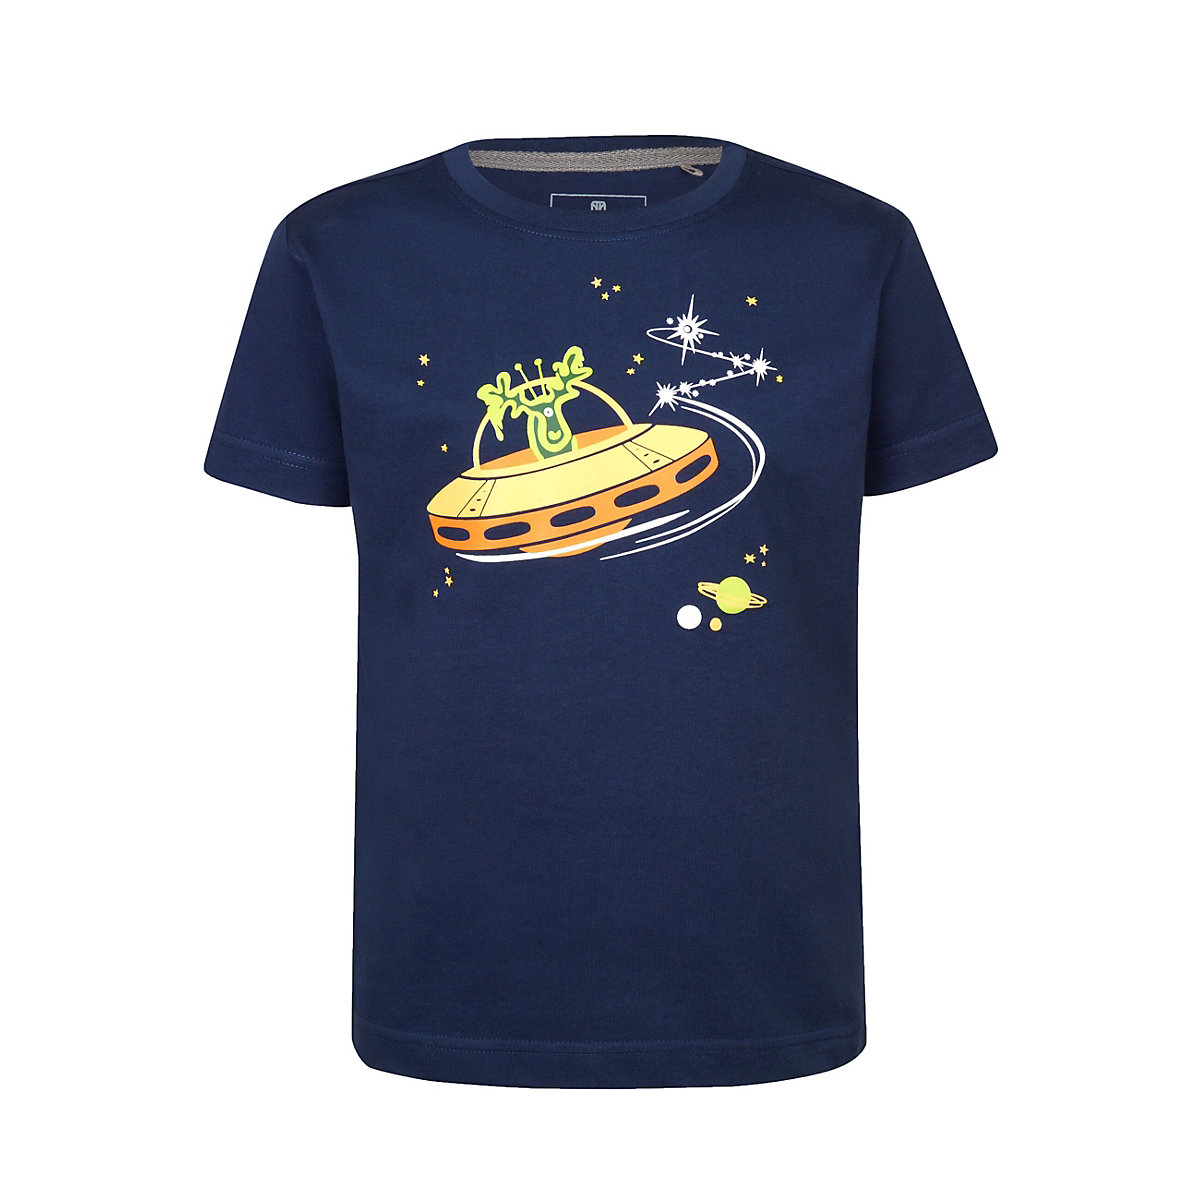 elkline T-Shirt Retro Ufo mit Elch-Print für Kinder blau